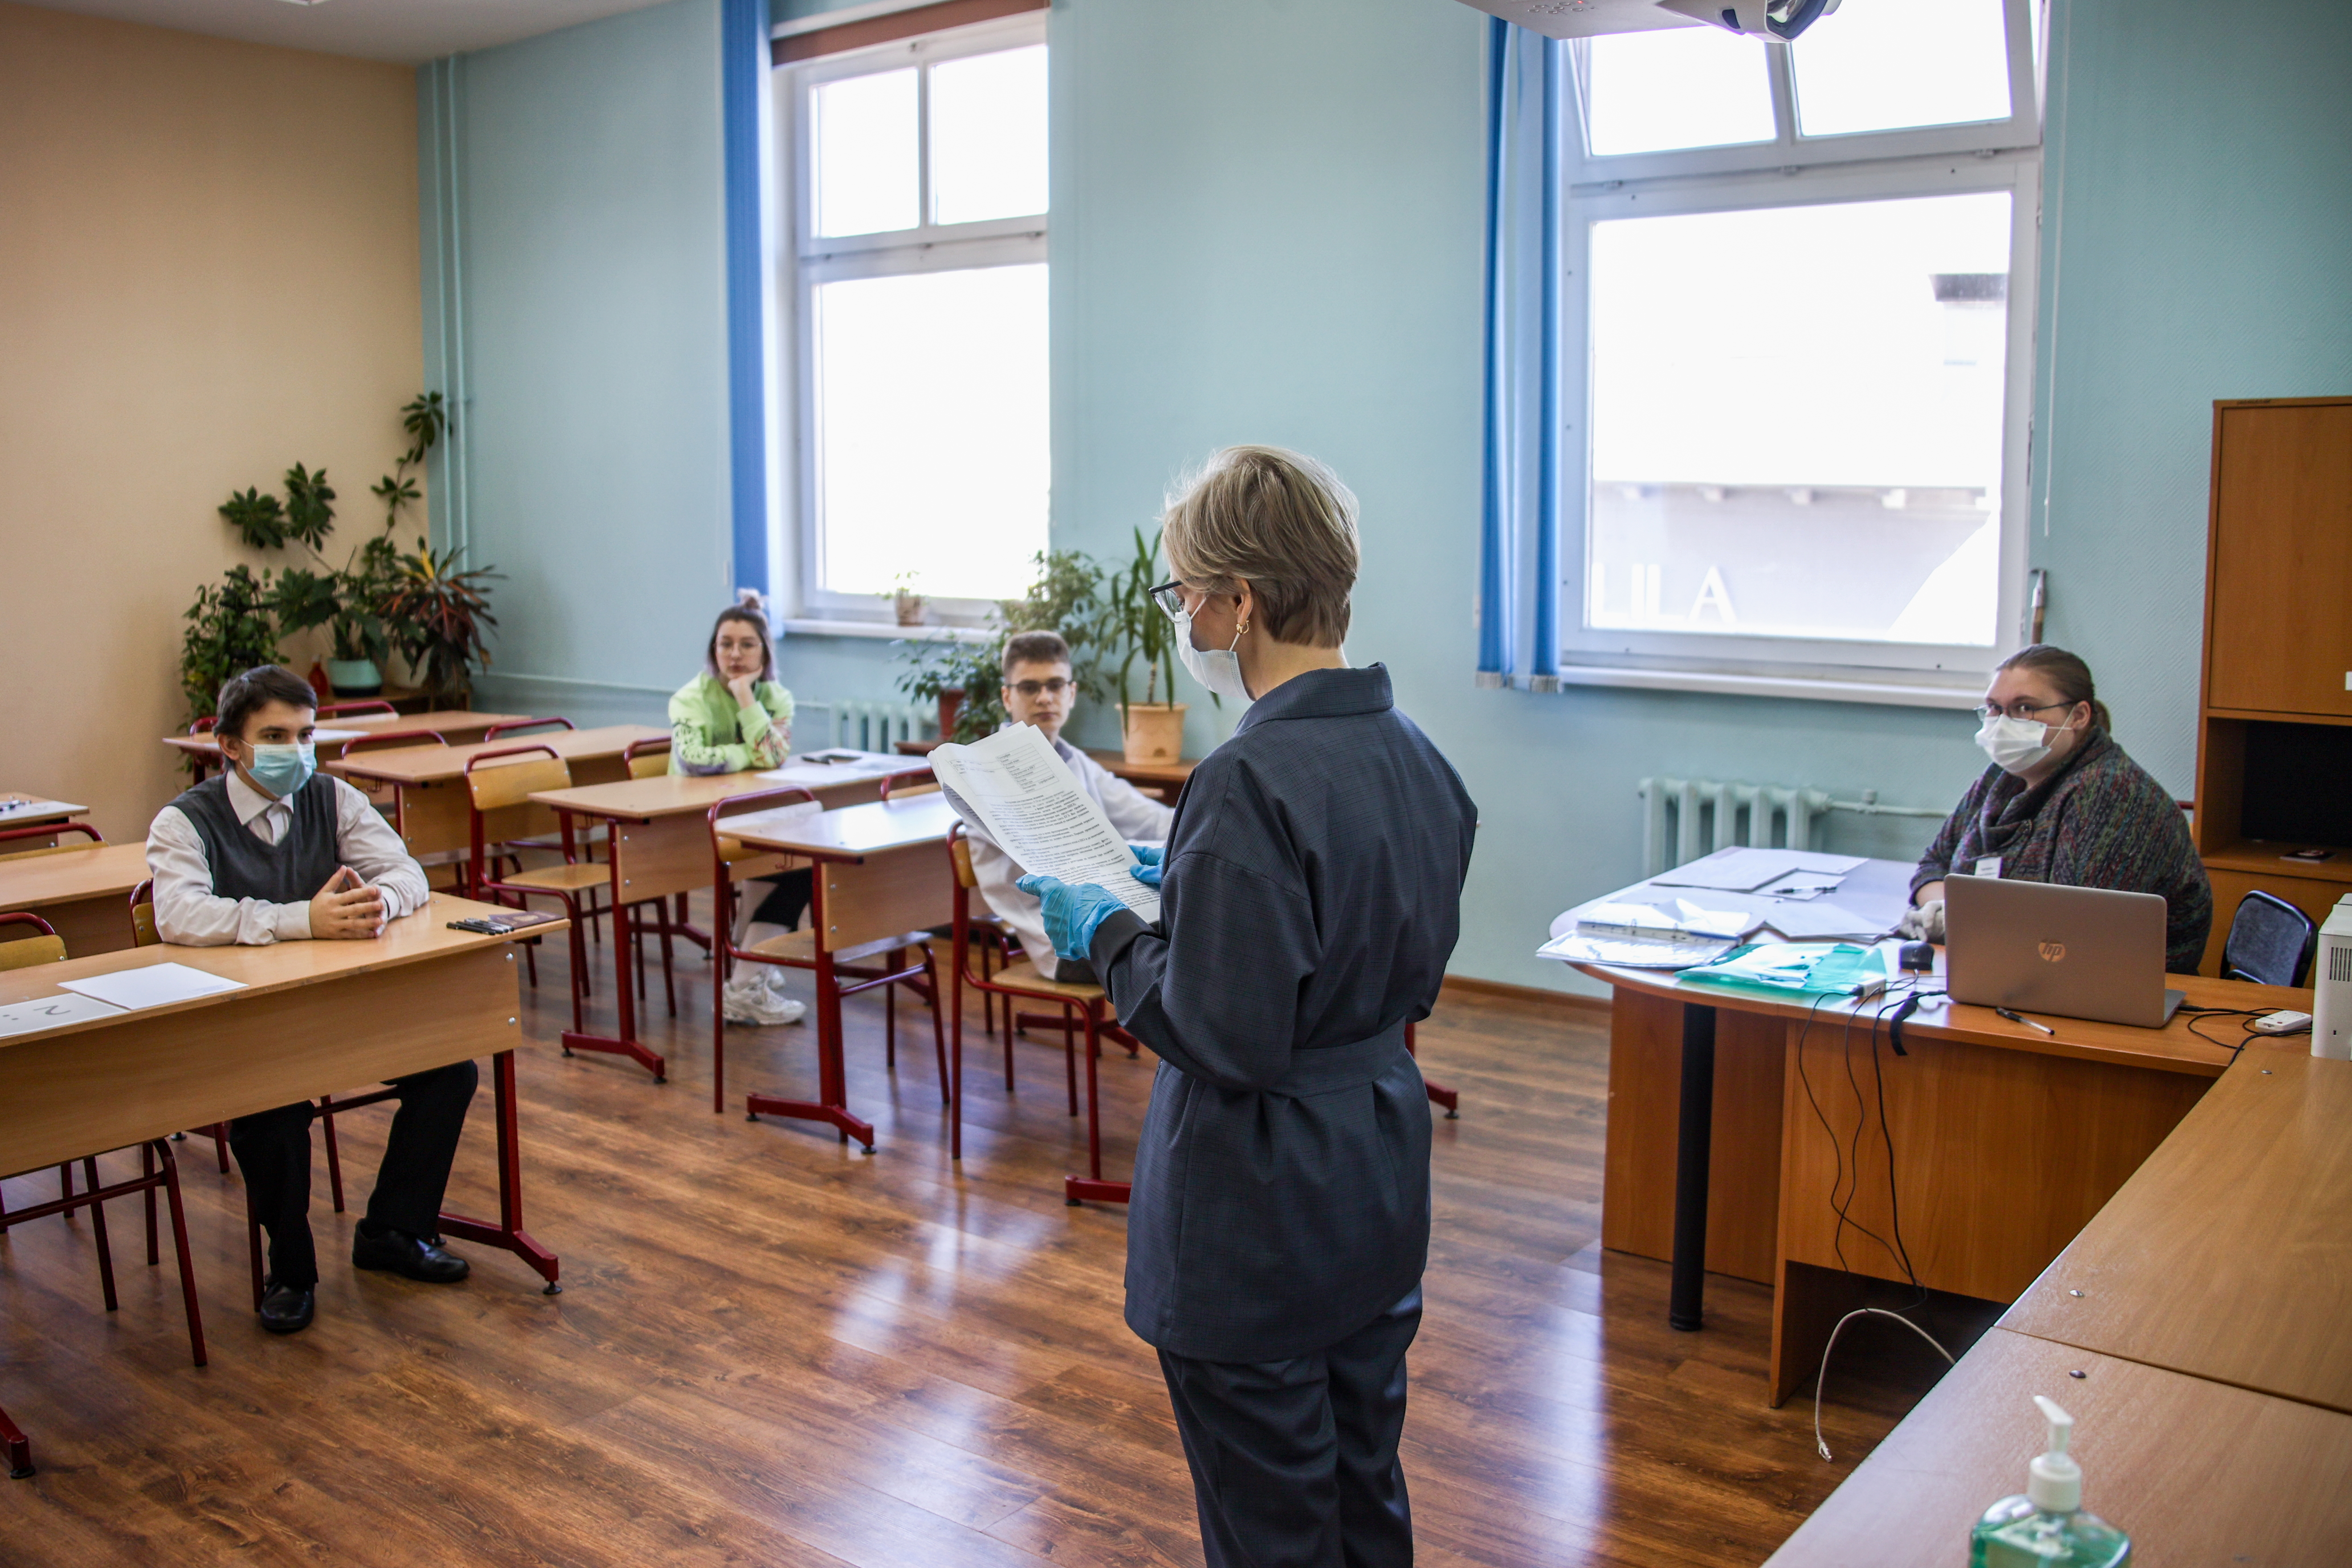 Школу на 825 учеников планируют построить в Заельцовском районе Новосибирска